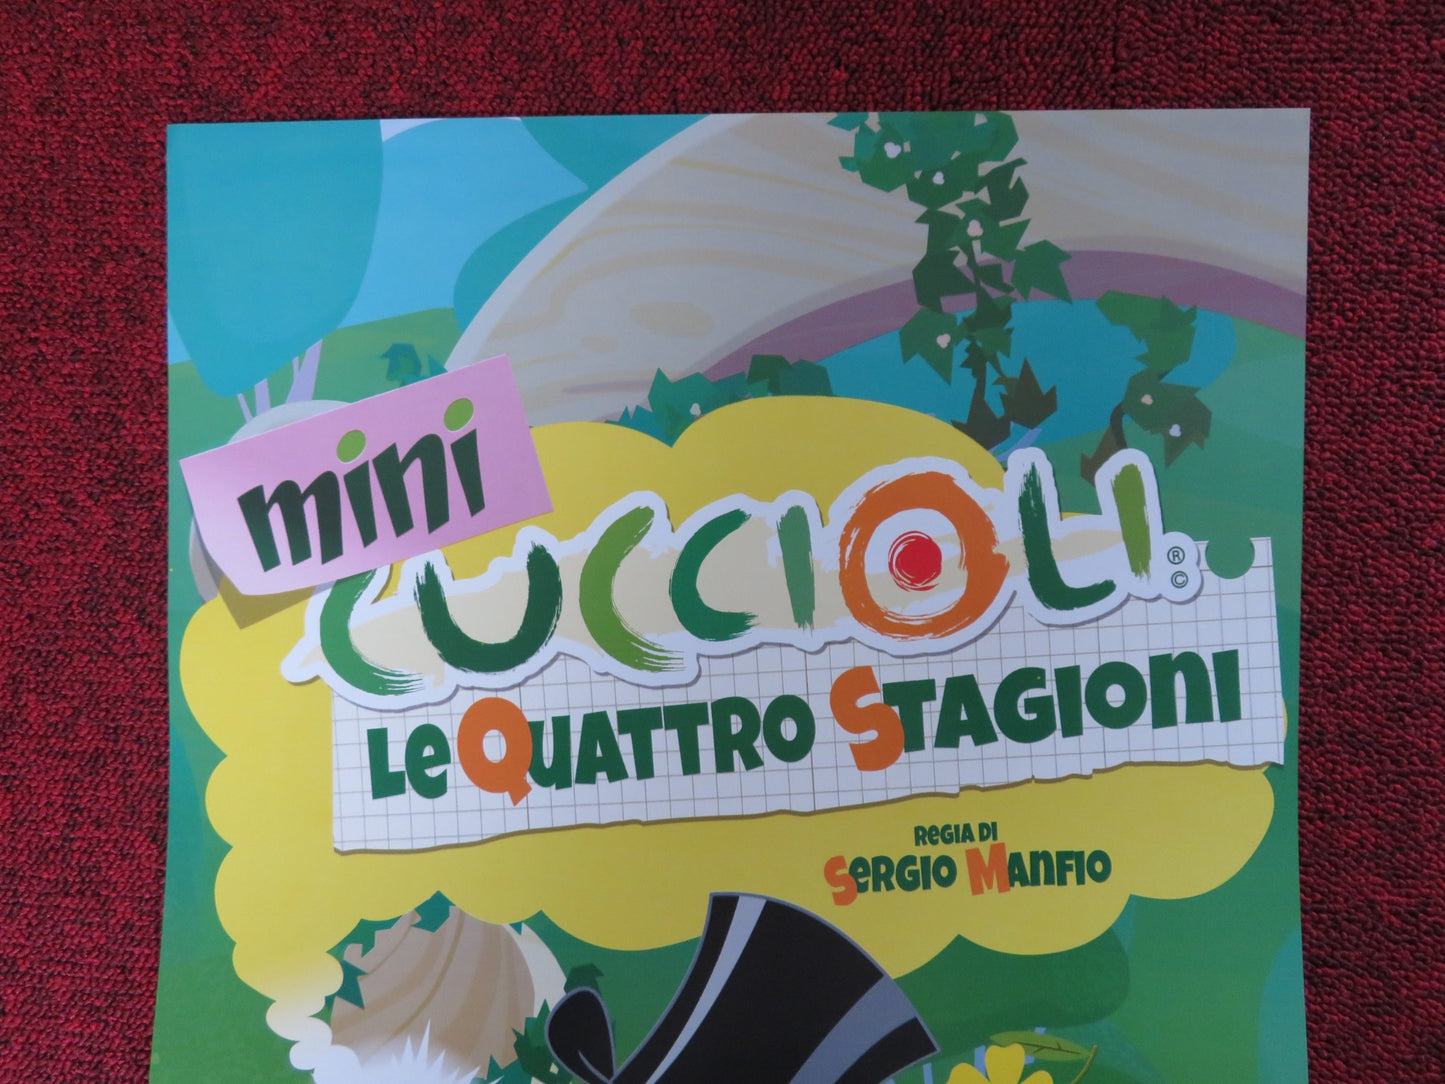 MINI CUCCIOLI LE QUATTRO STAGIONI ITALIAN LOCANDINA POSTER SERGIO MANFIO 2018